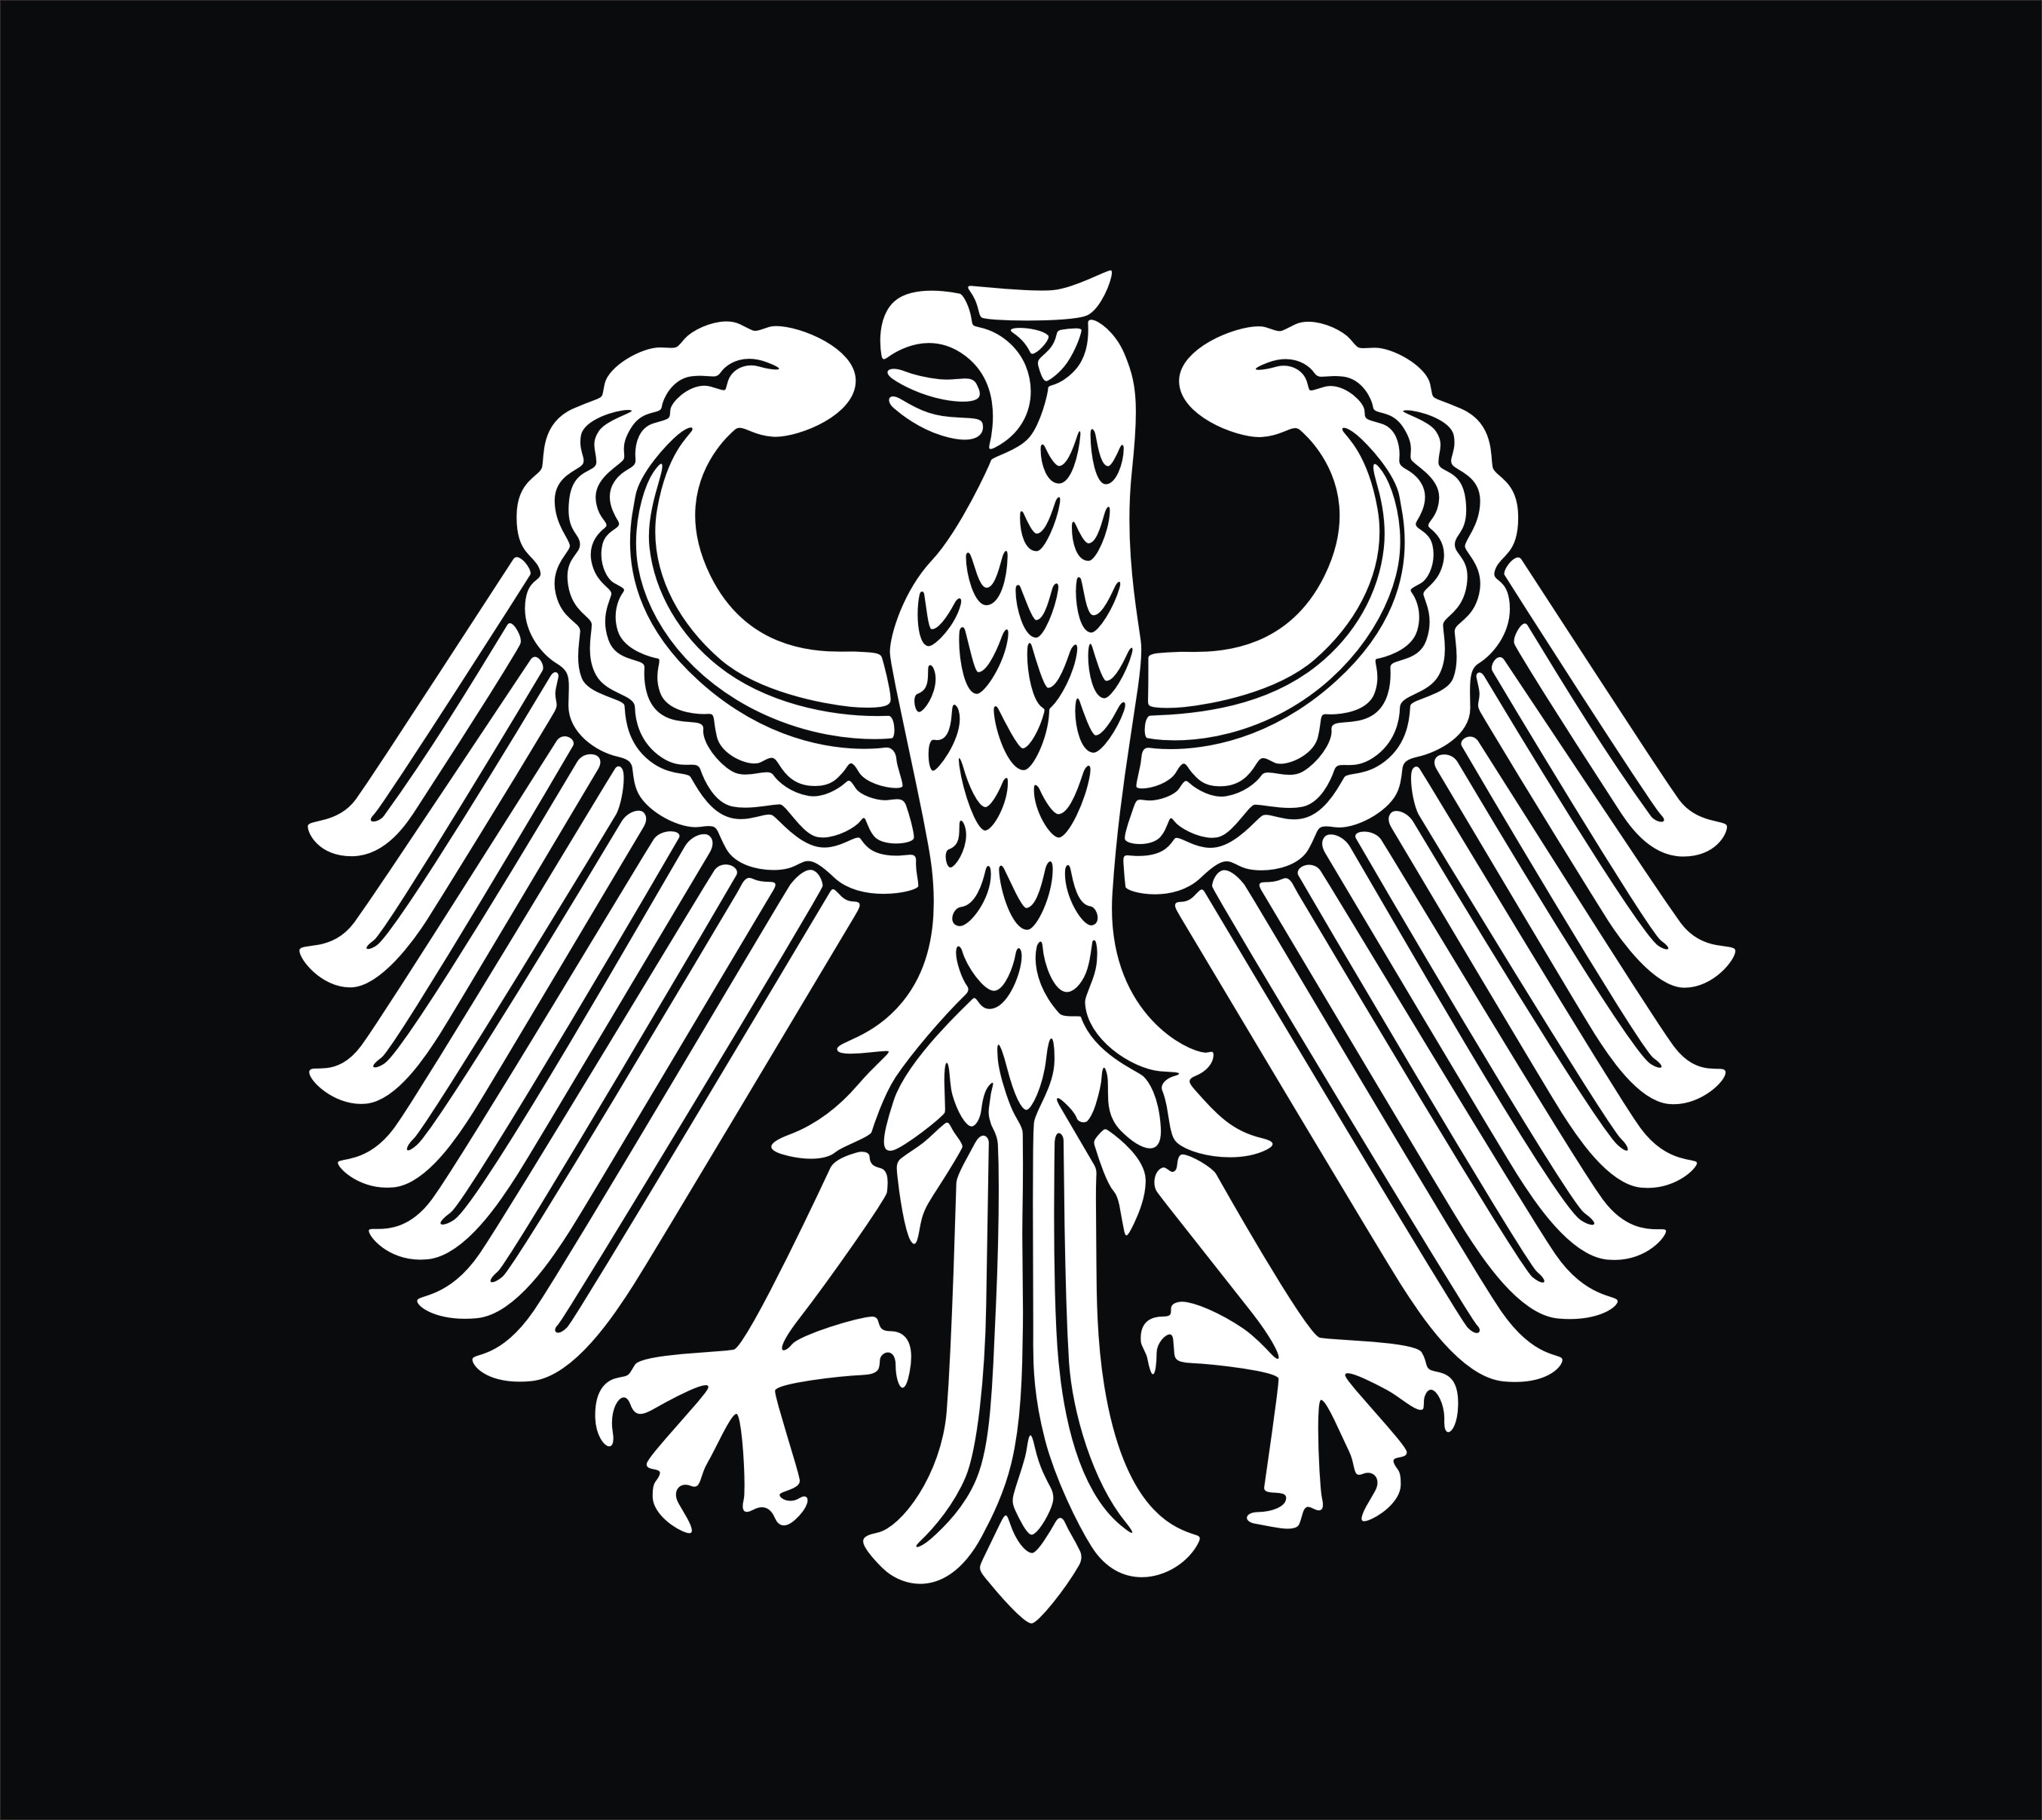 防水反光汽车贴纸车身德意志德国一级联邦十字功勋章632老鹰标志